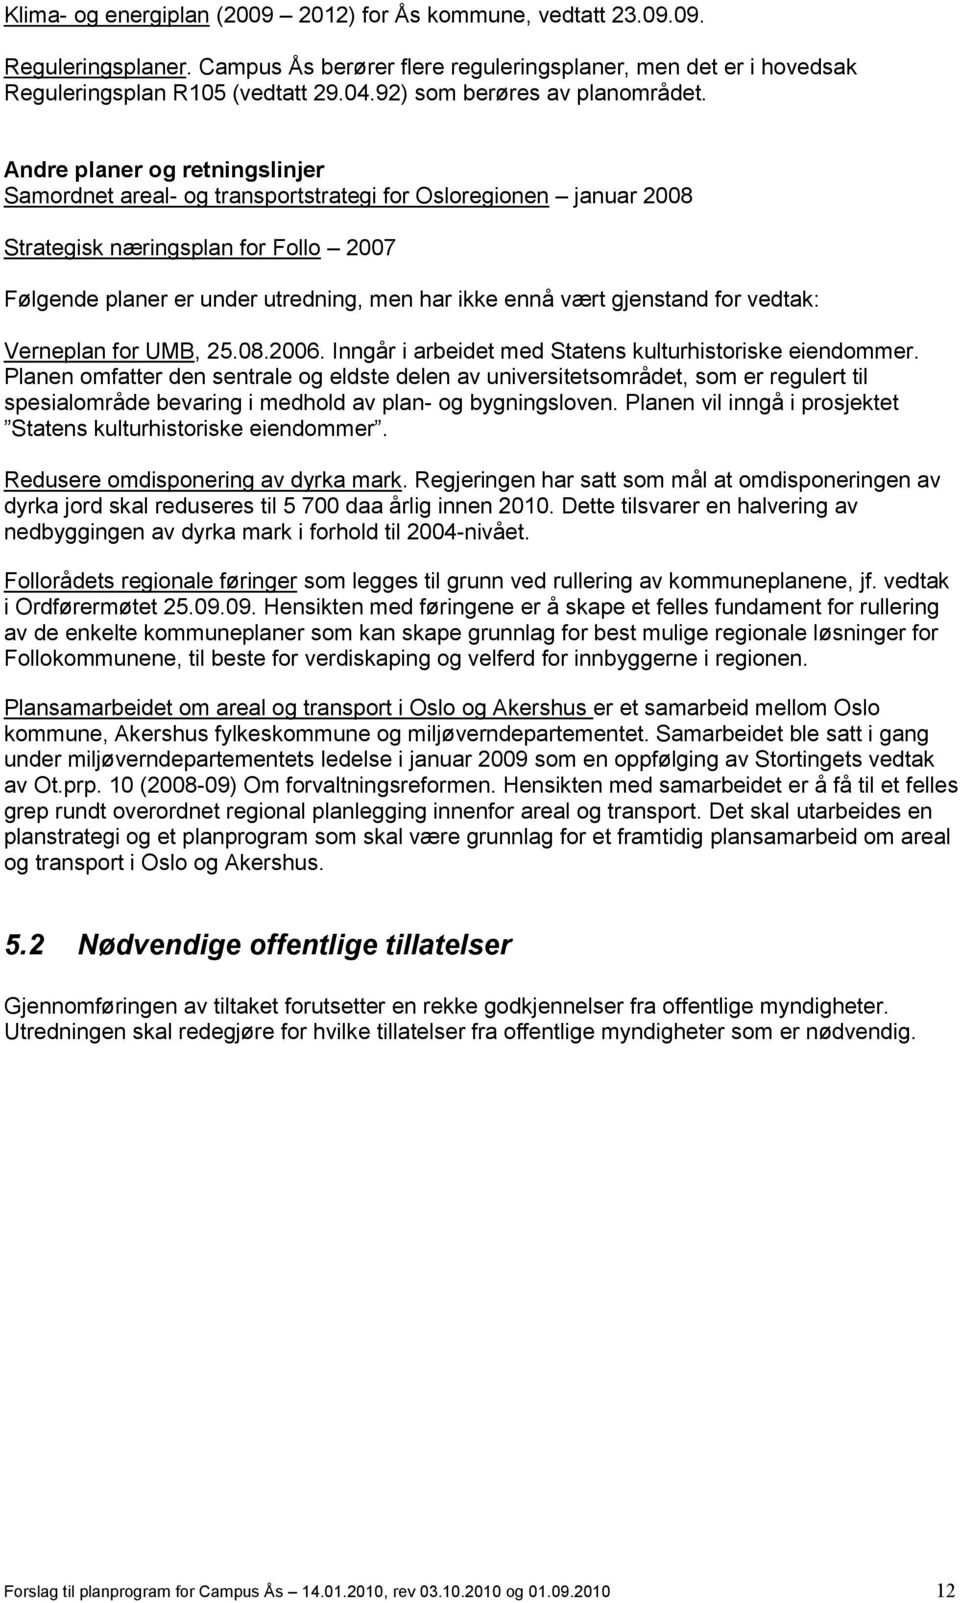 Andre planer og retningslinjer Samordnet areal- og transportstrategi for Osloregionen januar 2008 Strategisk næringsplan for Follo 2007 Følgende planer er under utredning, men har ikke ennå vært